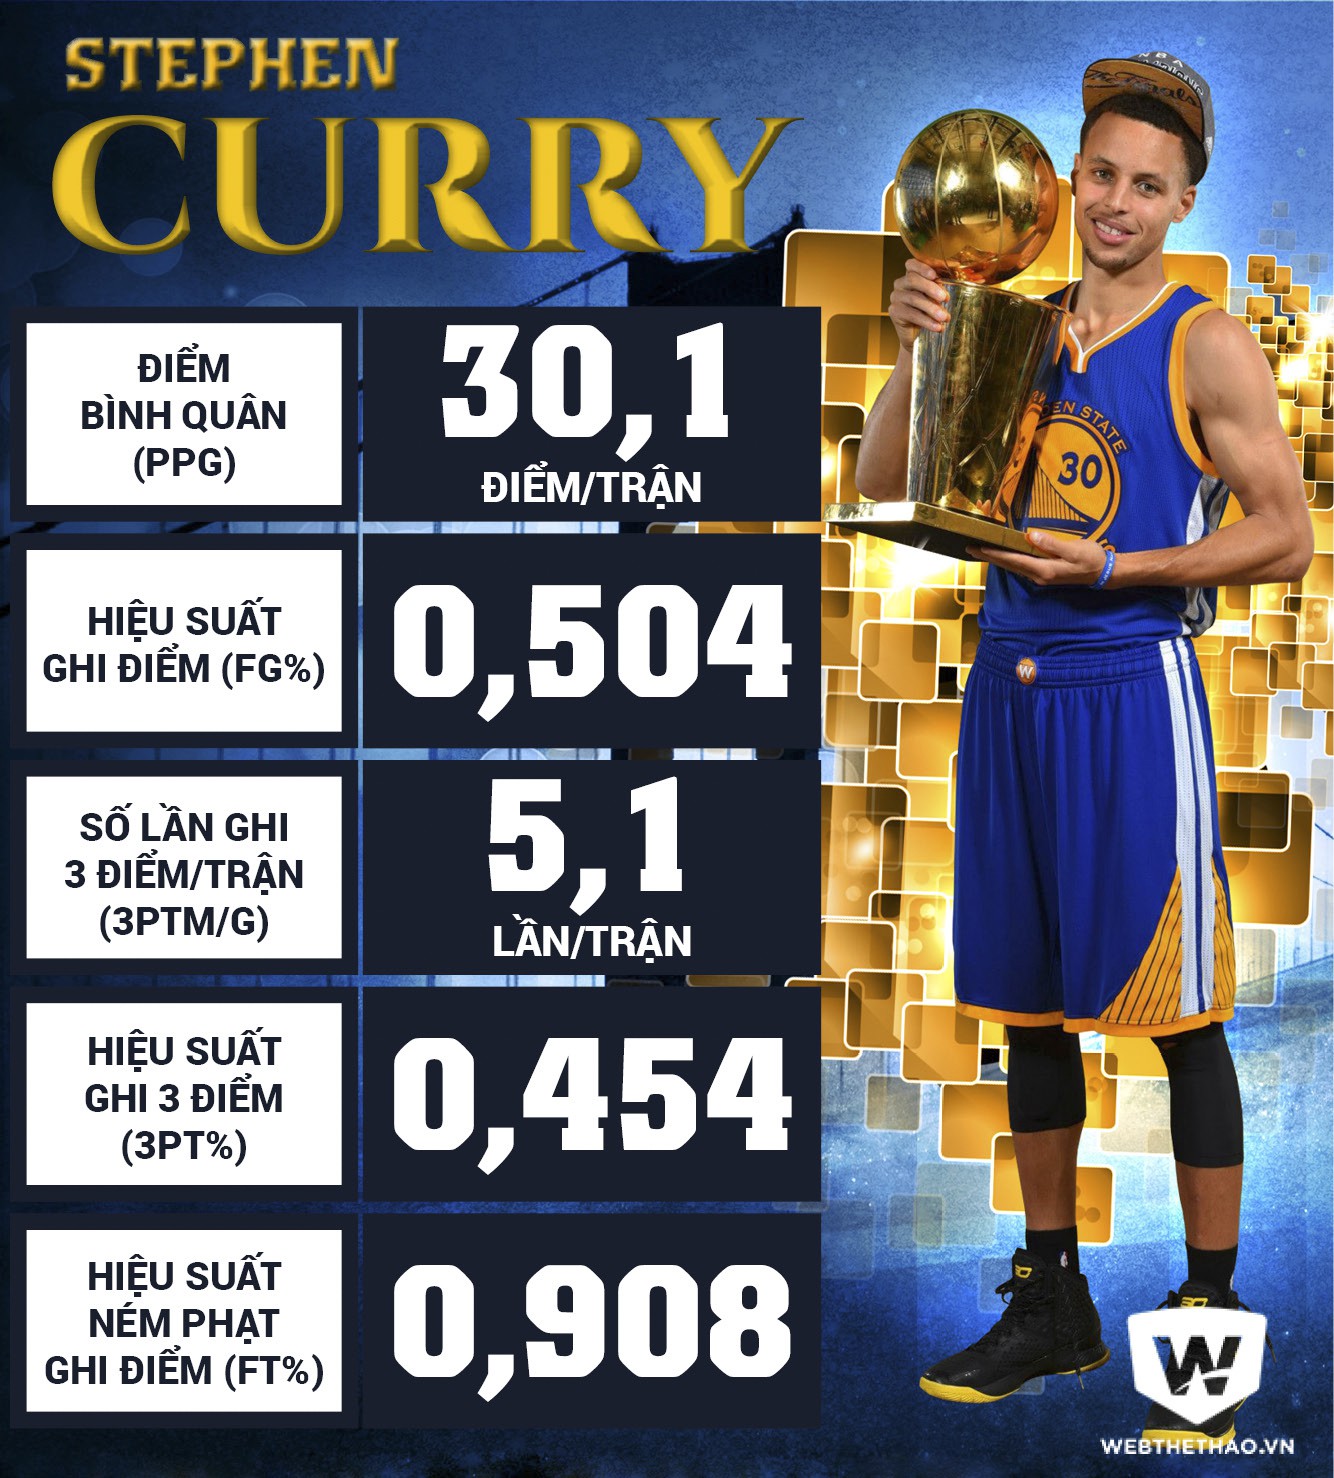 Curry là tay ném hay nhất lịch sử NBA nhưng anh chỉ thực sự thăng hoa khi chơi ở vị trí Sharpshooter Point Guard. Thiết kế: Bá Đức.